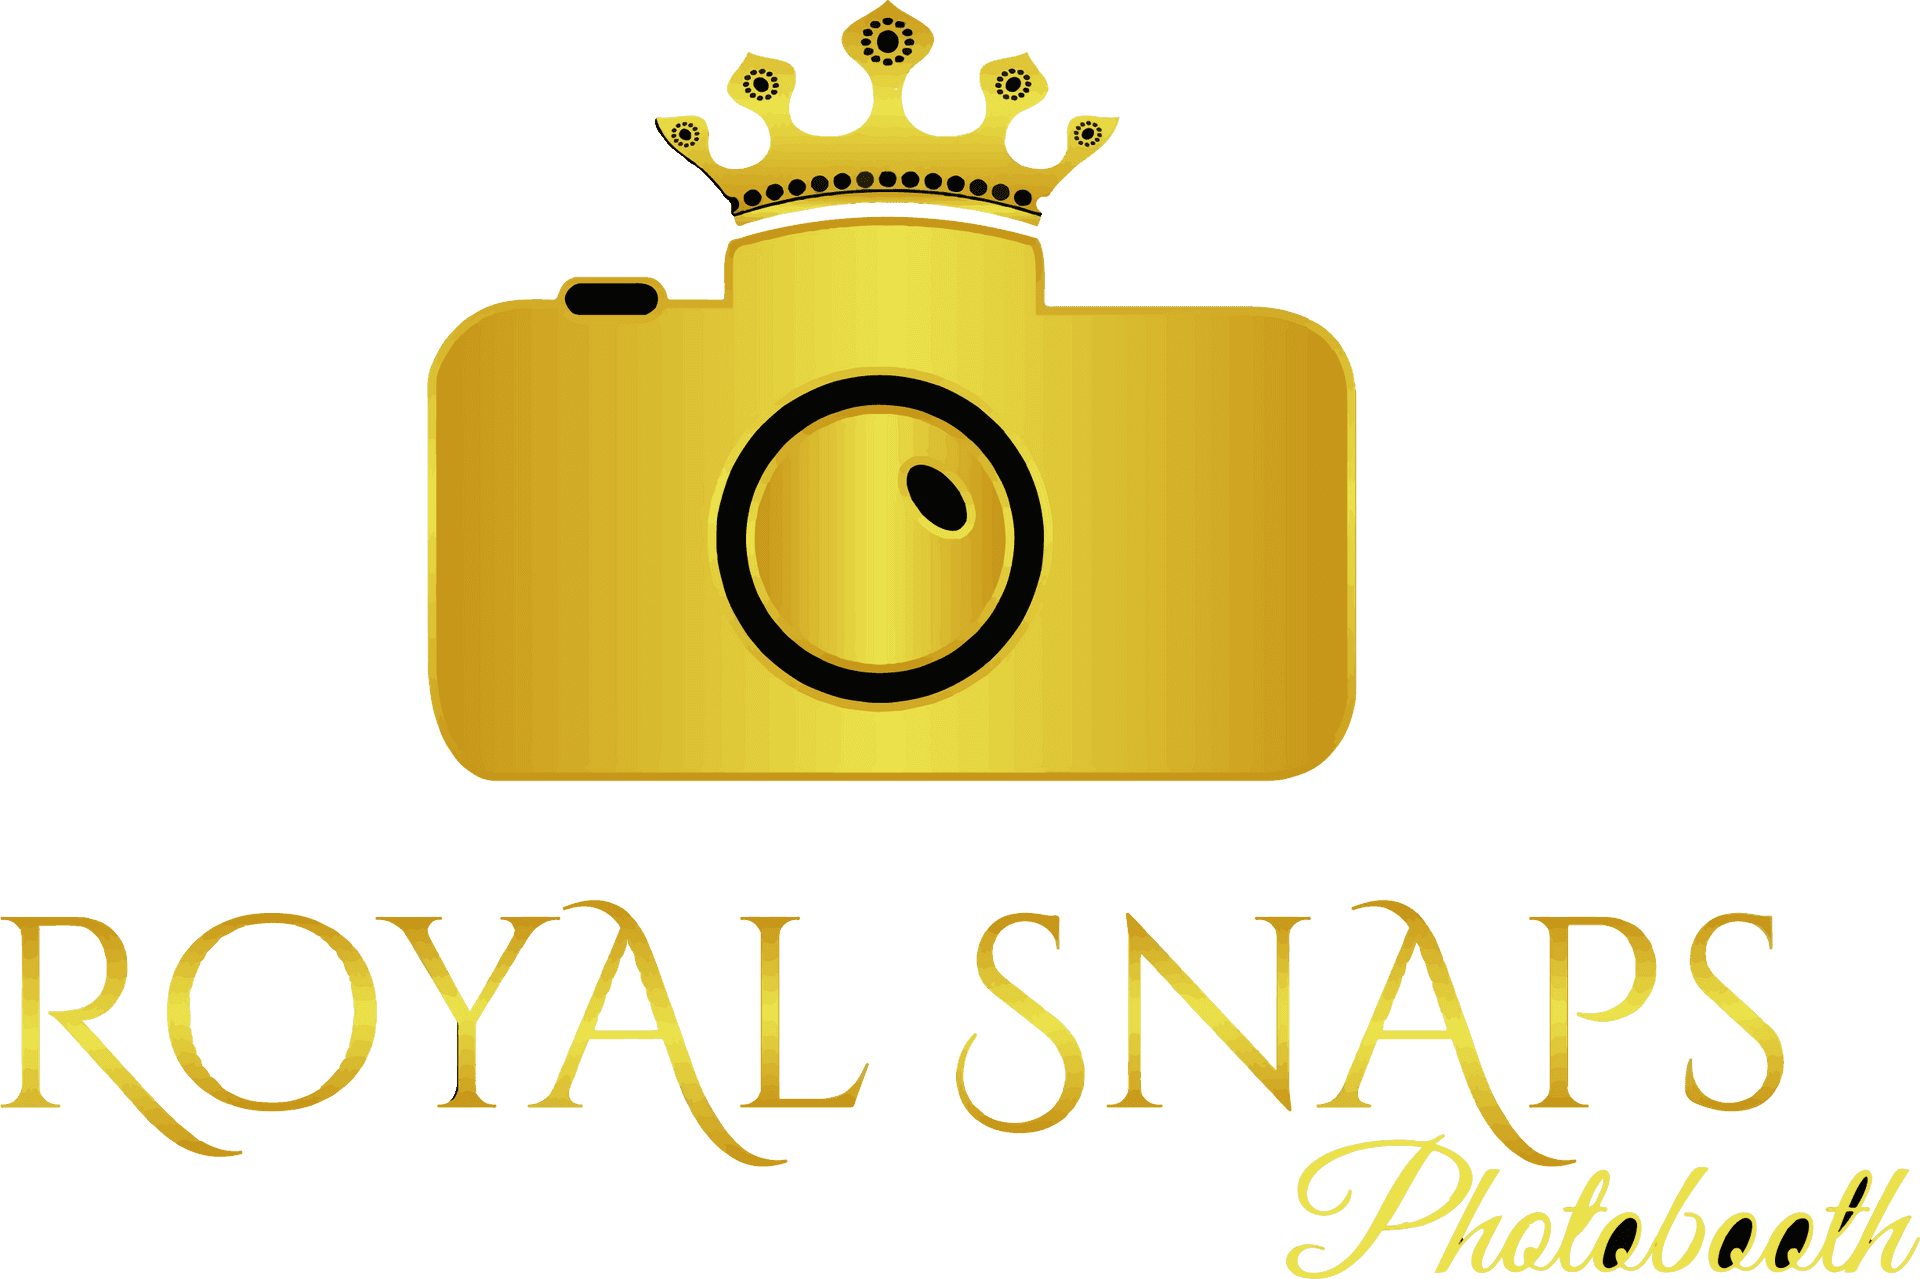 Royal Snaps Photobooth Logo PNG image